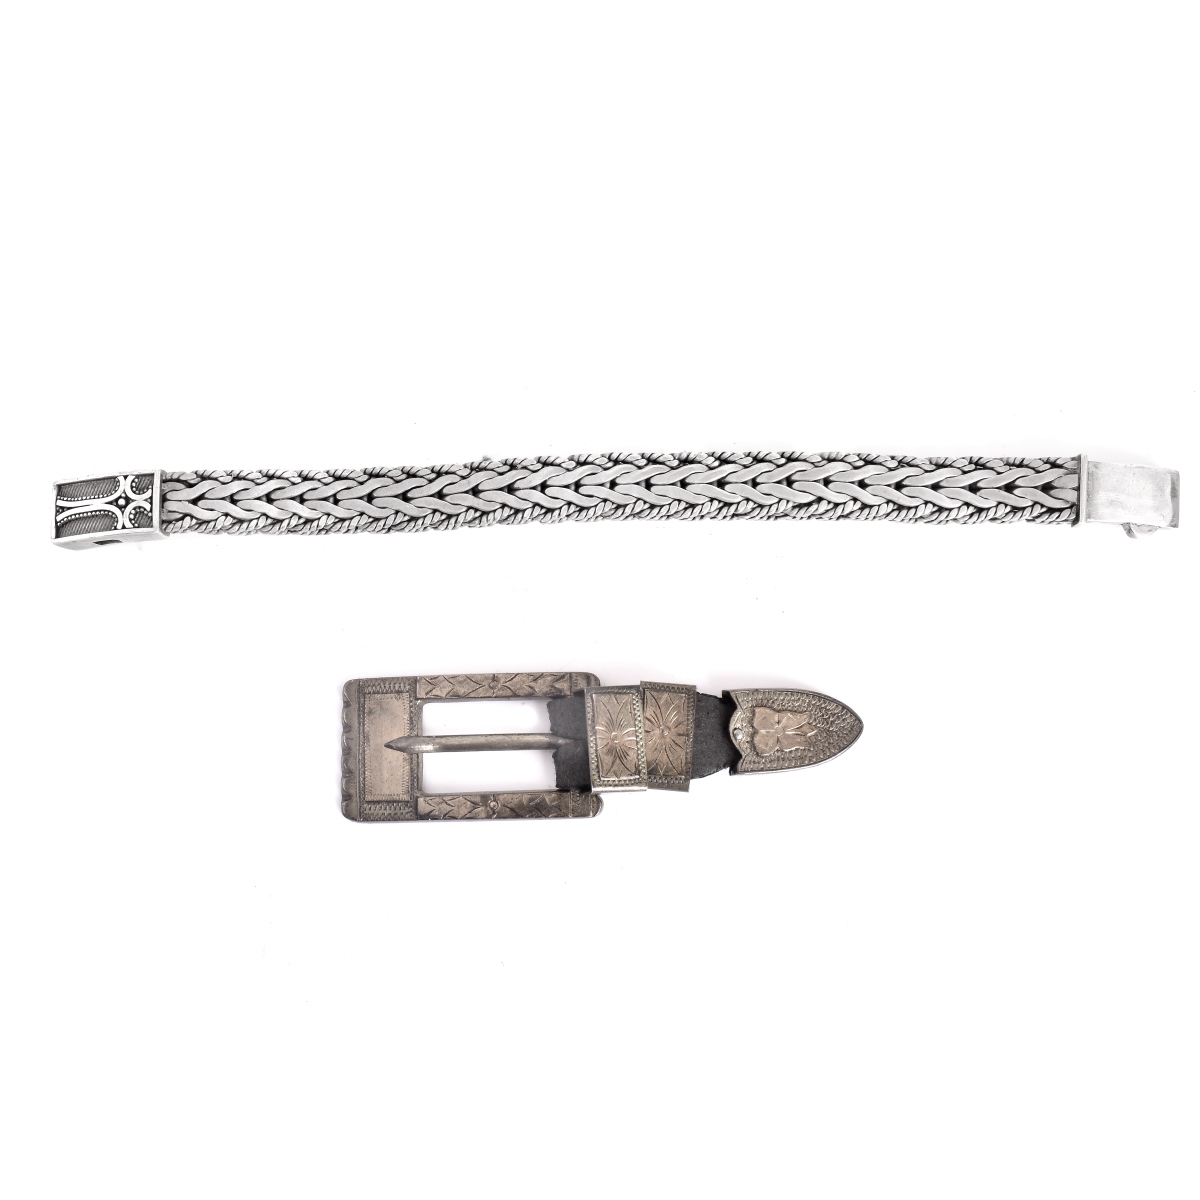 Vintage Sterling Bracelet and Belt Buckle